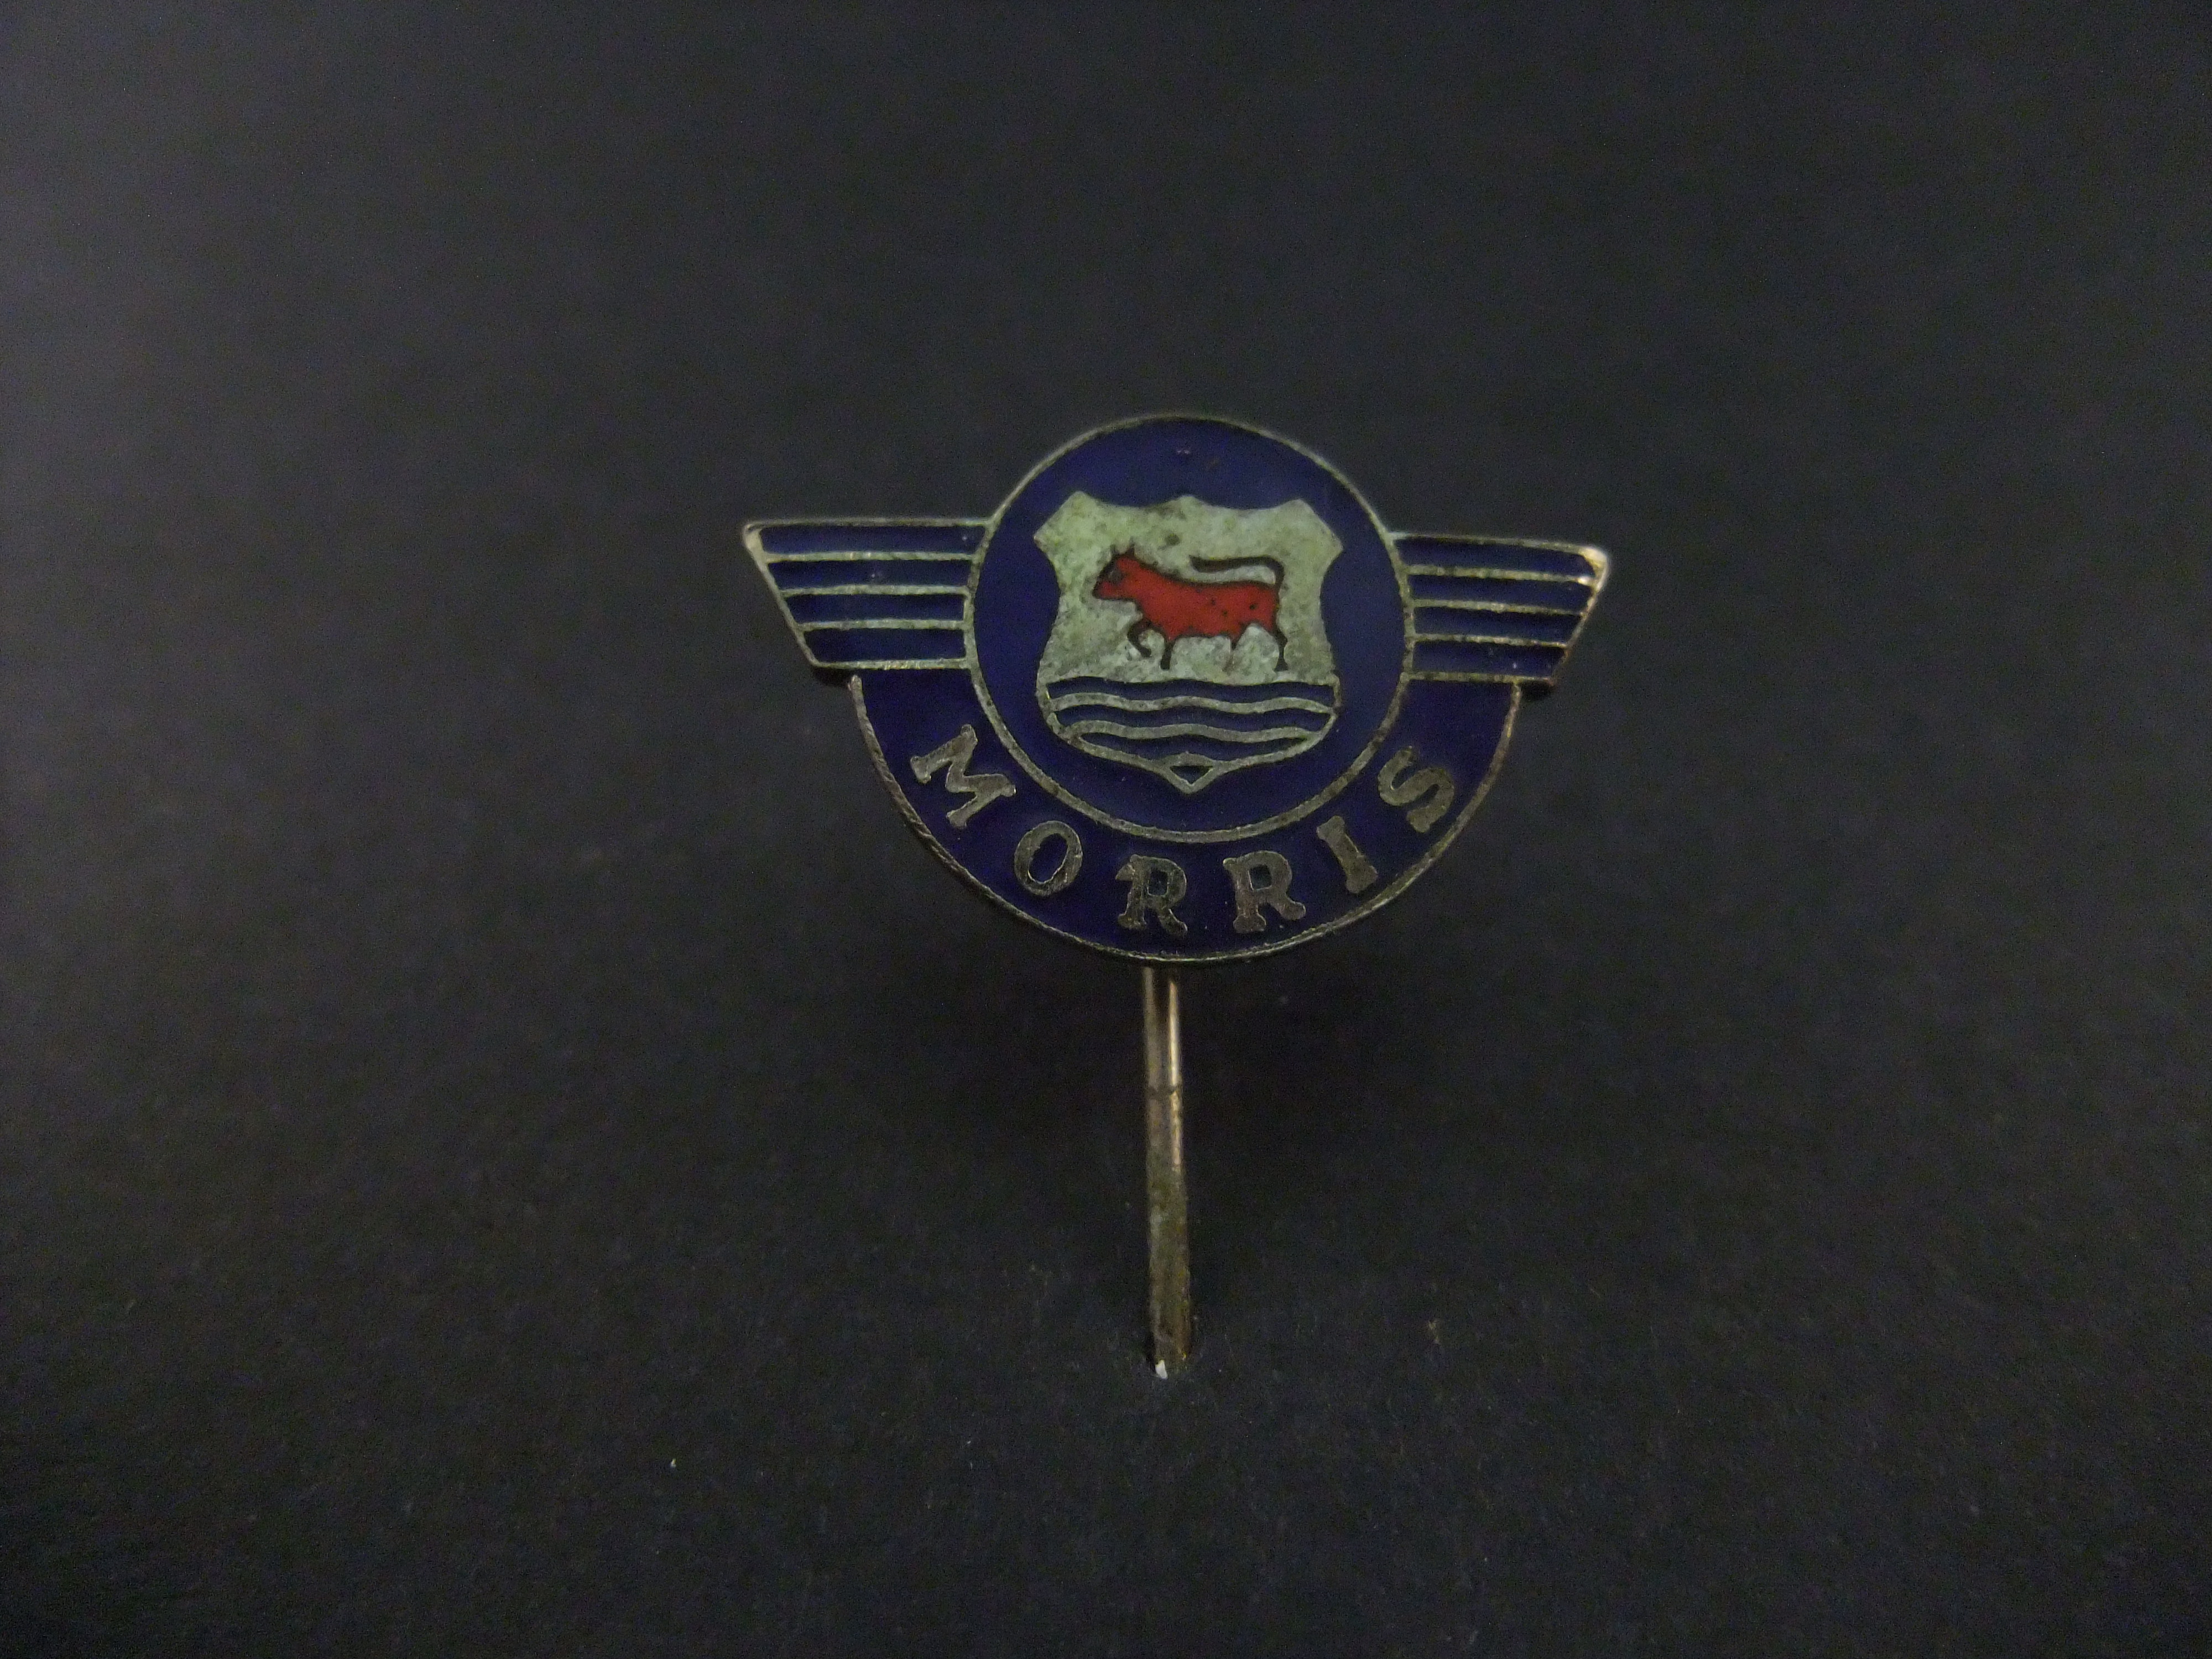 Austin Morris Brits automerk blauw logo zilverkleurig emaille uitvoering